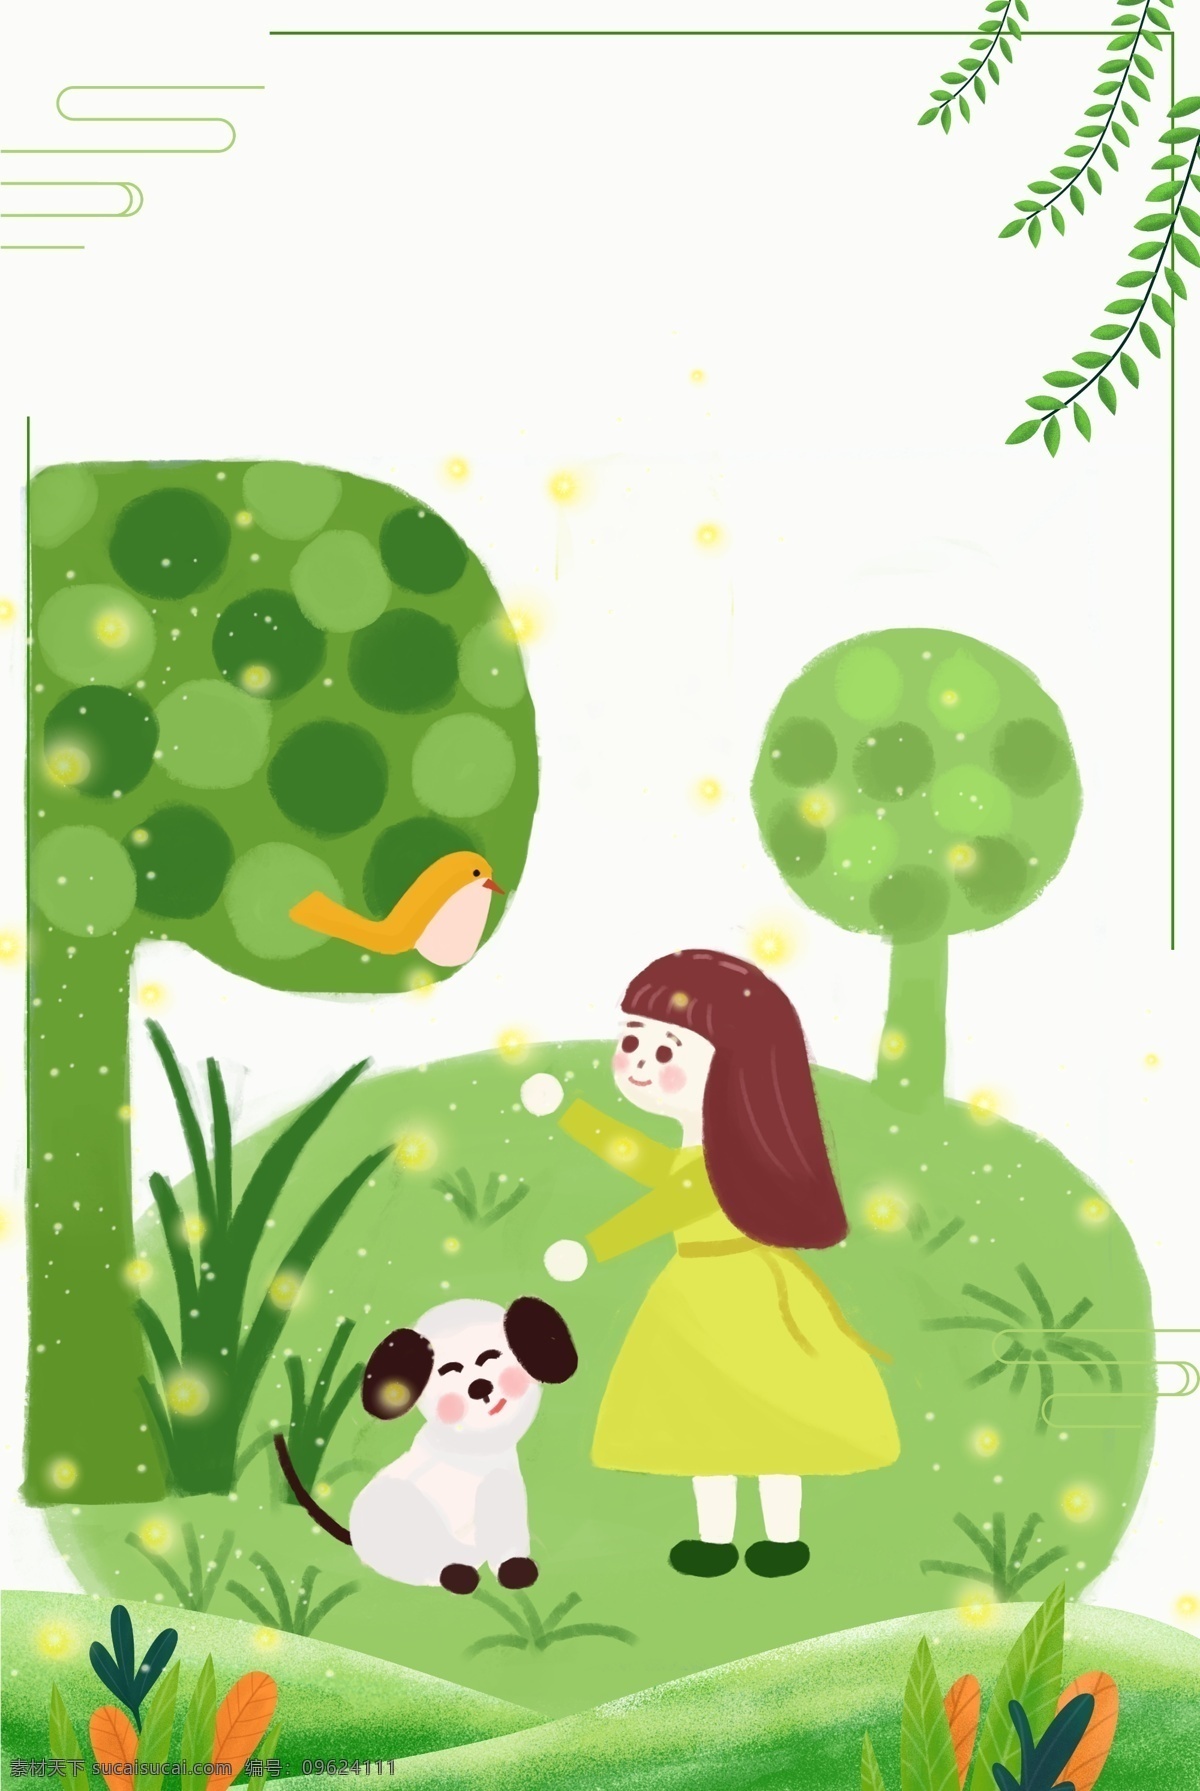 春天 树下 小女孩 小狗 草地 节气 小鸟 绿叶 树 边框 插画 卡通 春季上新 童装 草坡